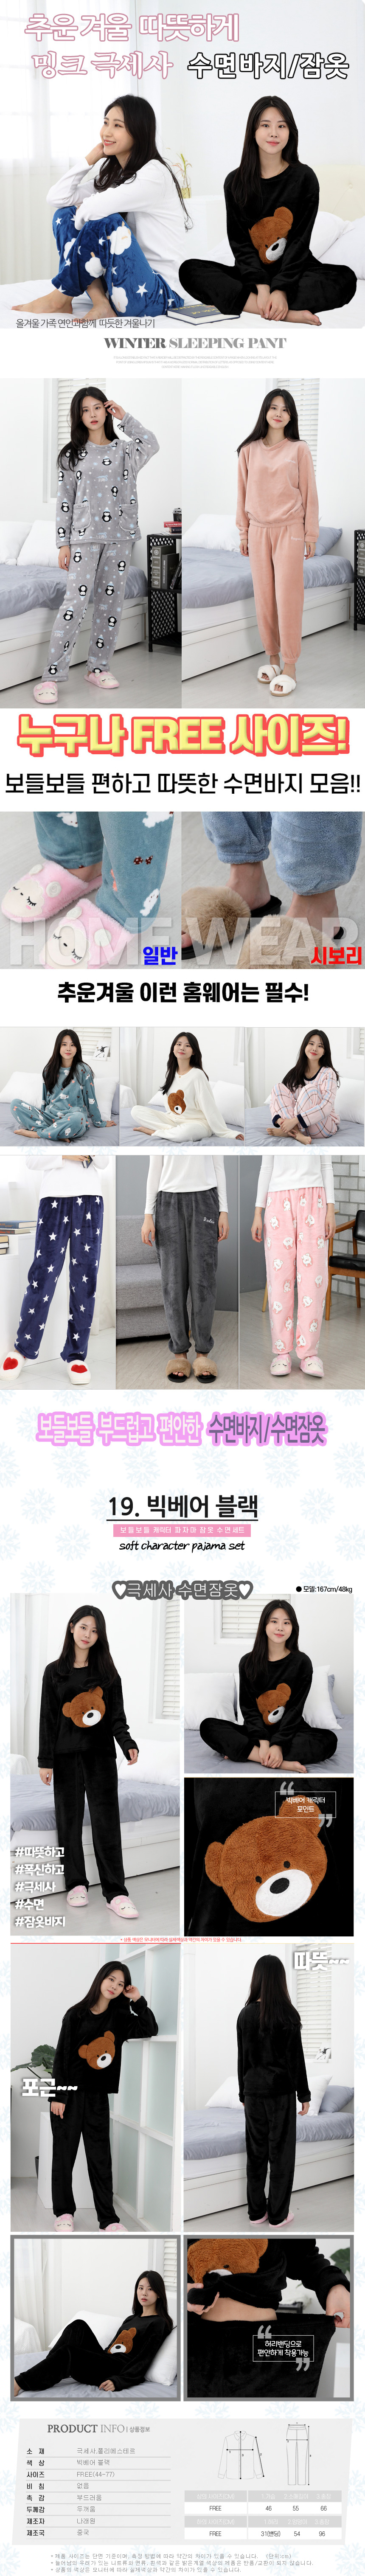 sleeping_pajamas_set_19.jpg